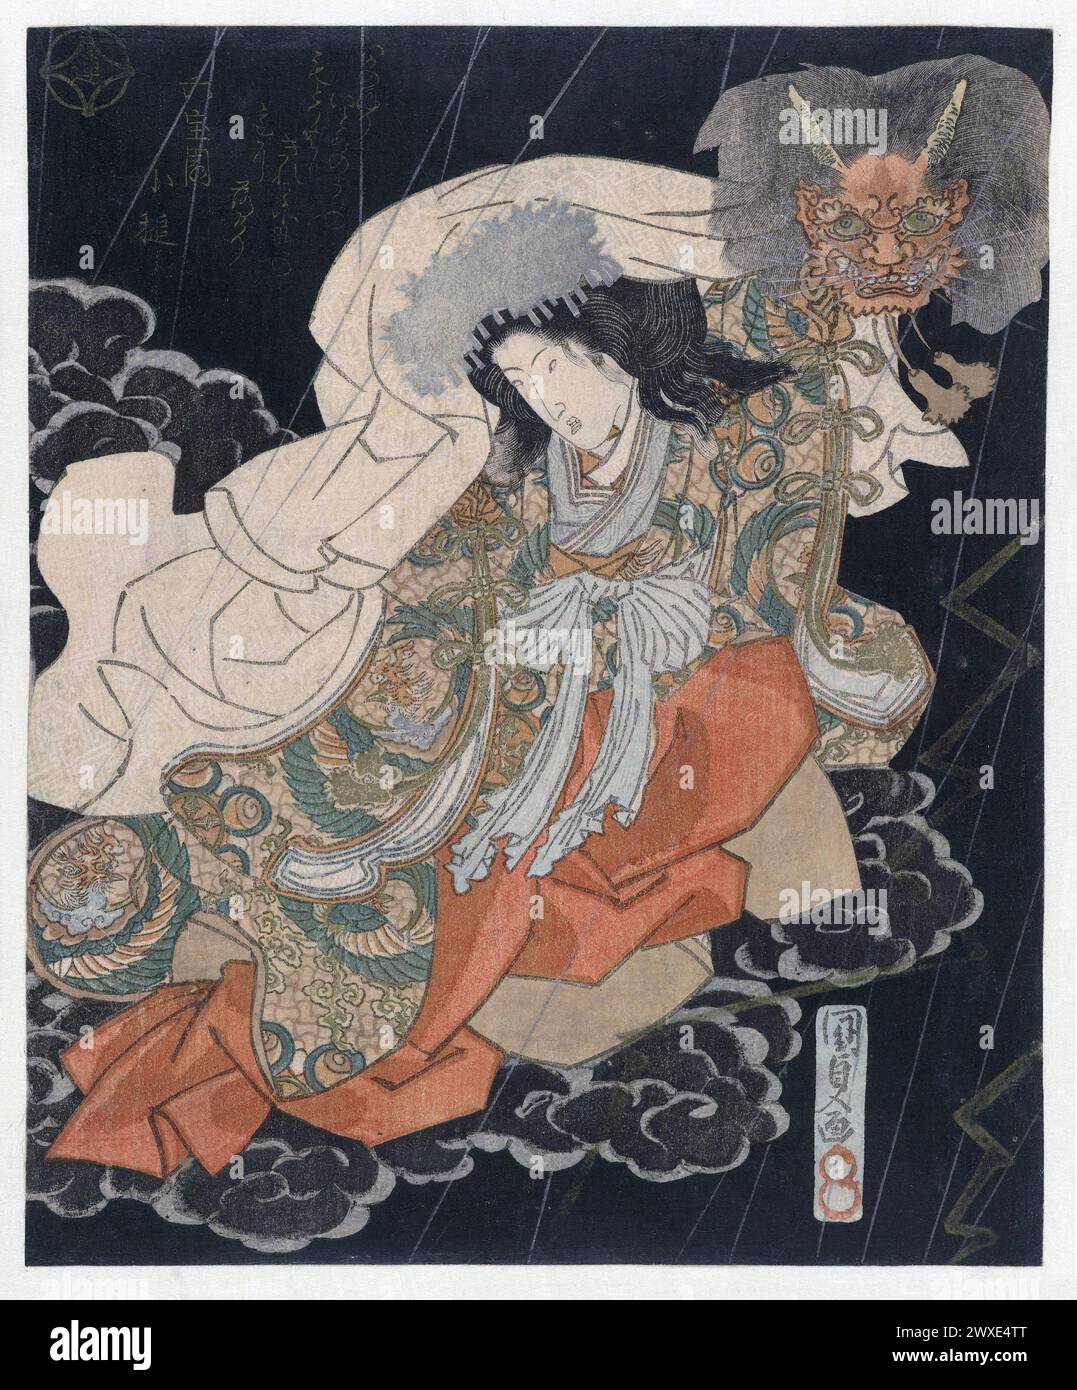 Xilografia giapponese stampata su carta da Utagawa Kunisada, Giappone, 1833. Donna con una maschera demoniaca tra le nuvole. Un demone femminile tiene una maschera demone in una notte di pioggia. La donna è interpretata dall'attore Segawa Kikunoj™ V (1802-32) nella commedia kabuki Modoribashi. Questo gioco è basato sul gioco N™h 'rash™mon', in cui un uomo, Watanabe no Tsuna, incontra una donna al ponte Ichij™ Modori. Riconosce la donna come un demone e quando cerca di rapirlo le taglia il braccio, dopodiché vola via. Questo è il foglio superiore di un dittico verticale. Con una poesia. Foto Stock